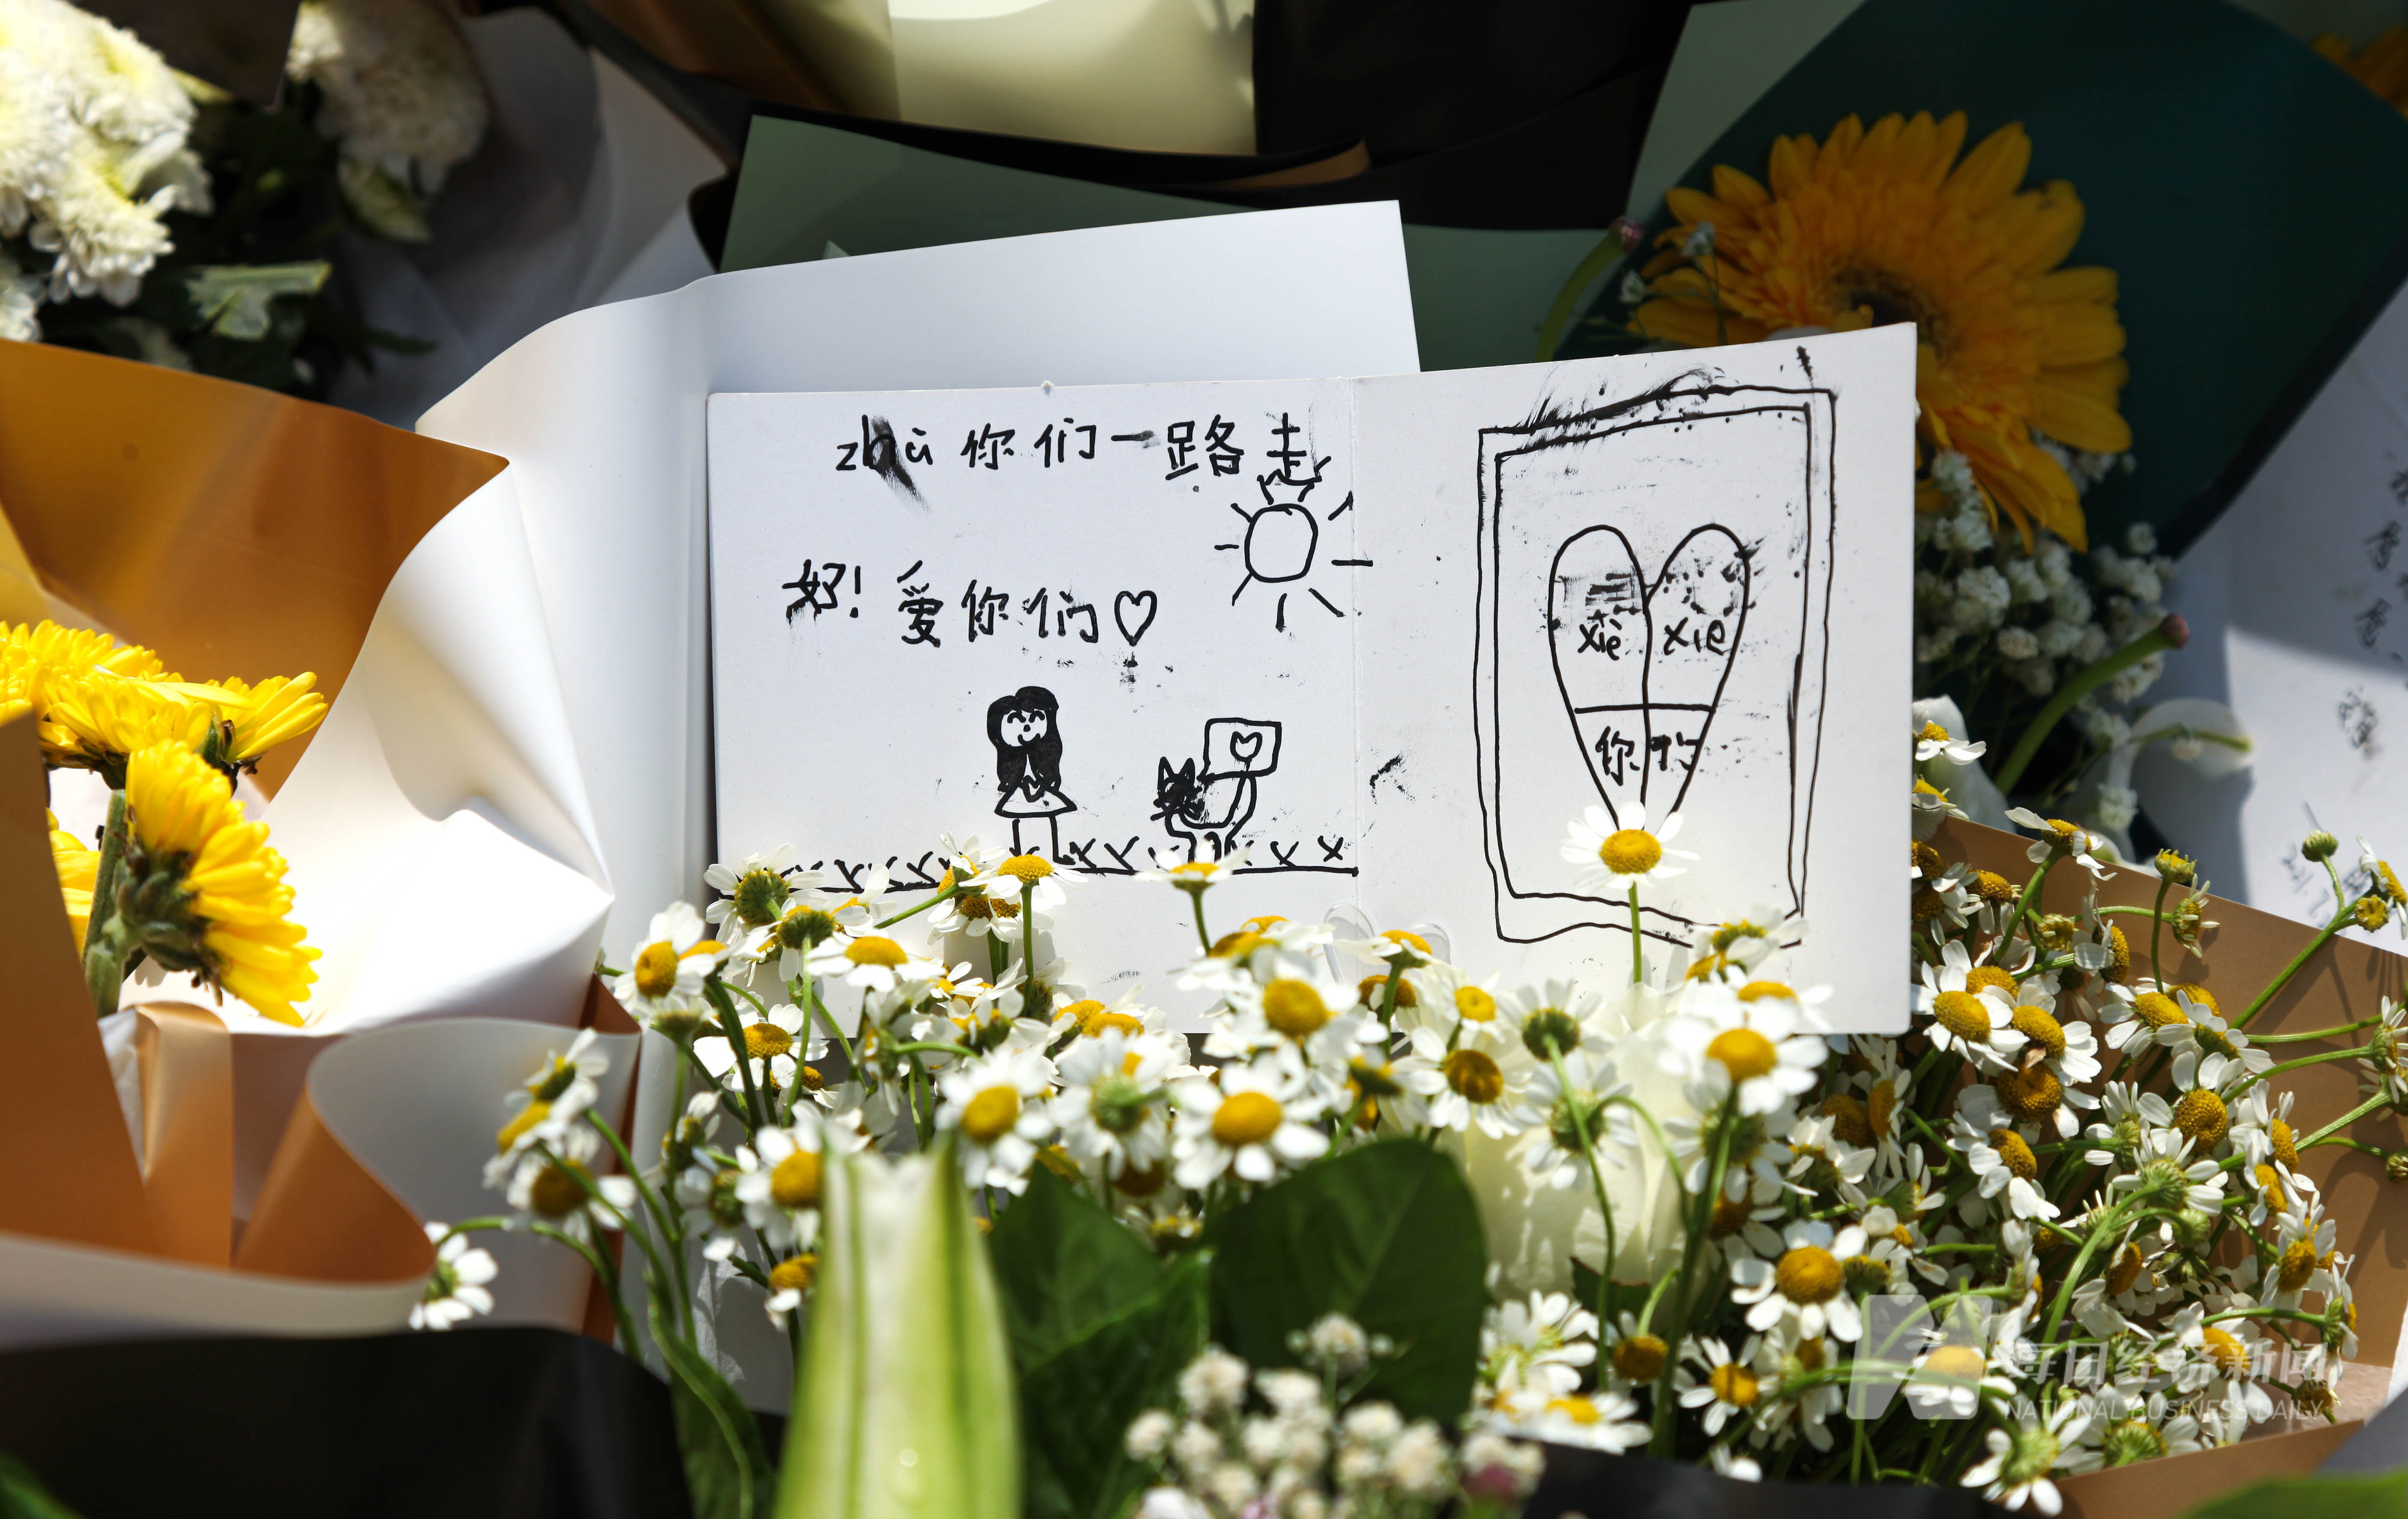 图集丨鲜花寄语铺满郑州地铁沙口路站门前京广隧道天桥上飘花香